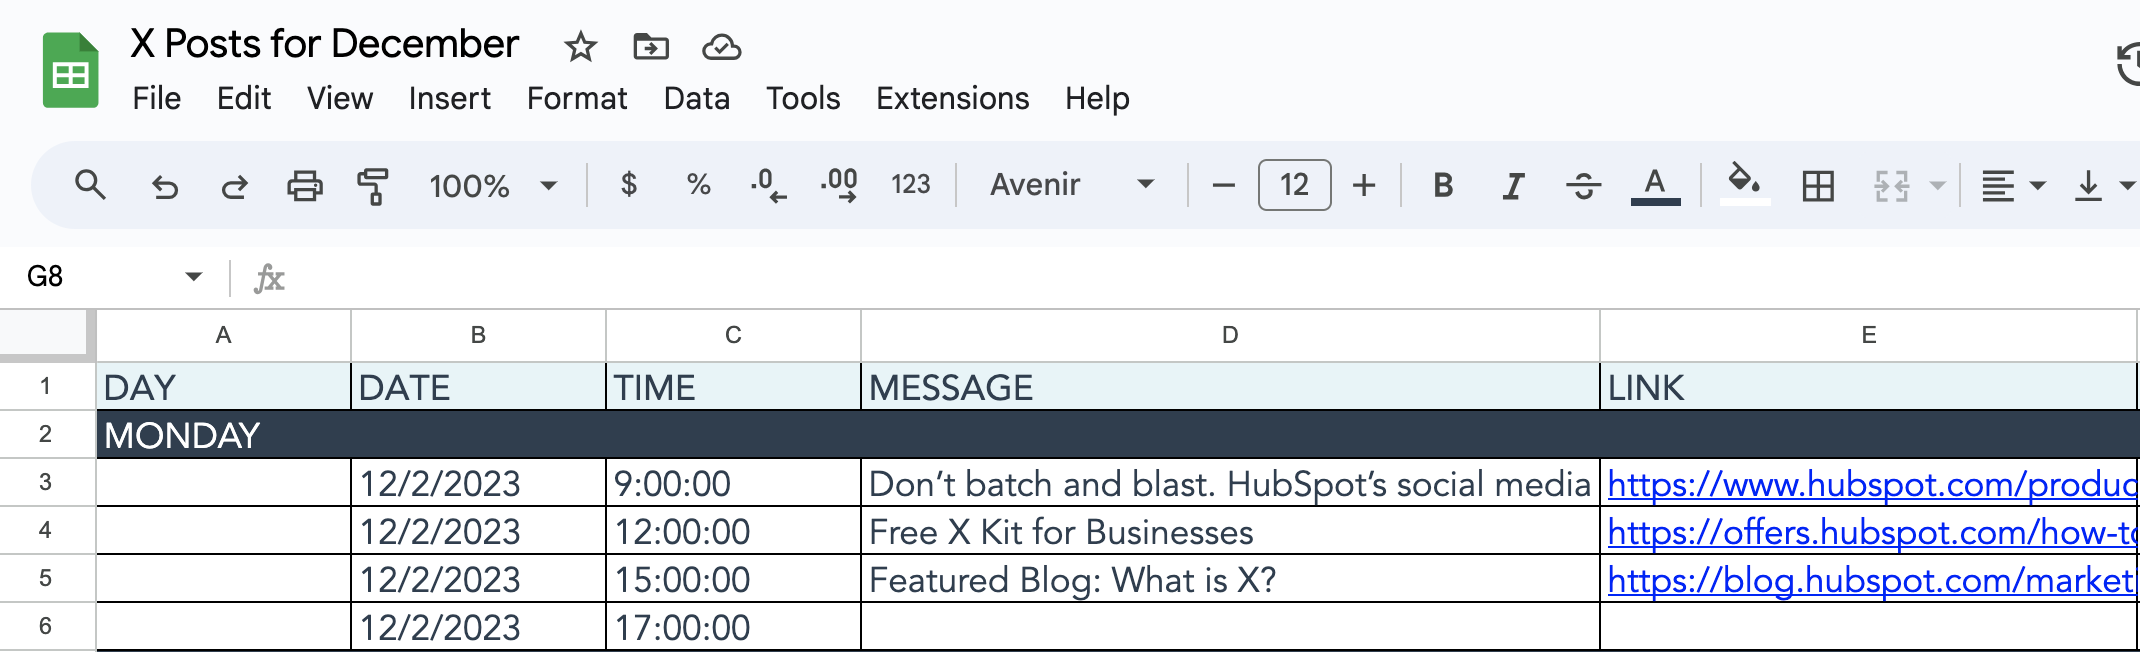 social media content calendar tool: hubspot templates